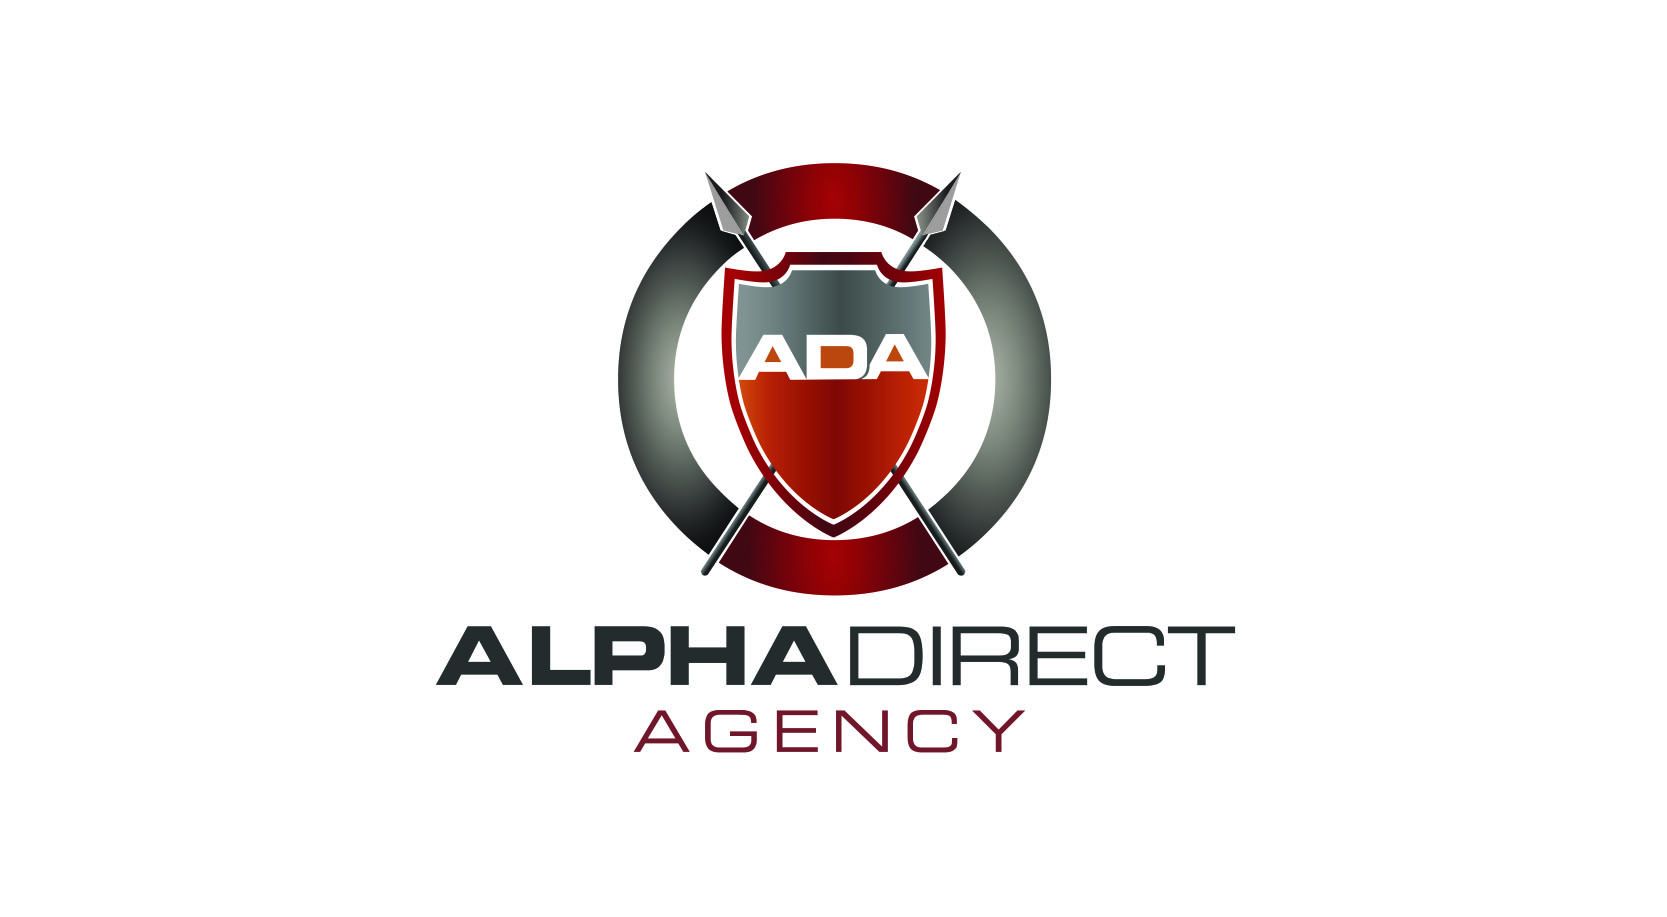 Alpha Direct Agency LLC Logo